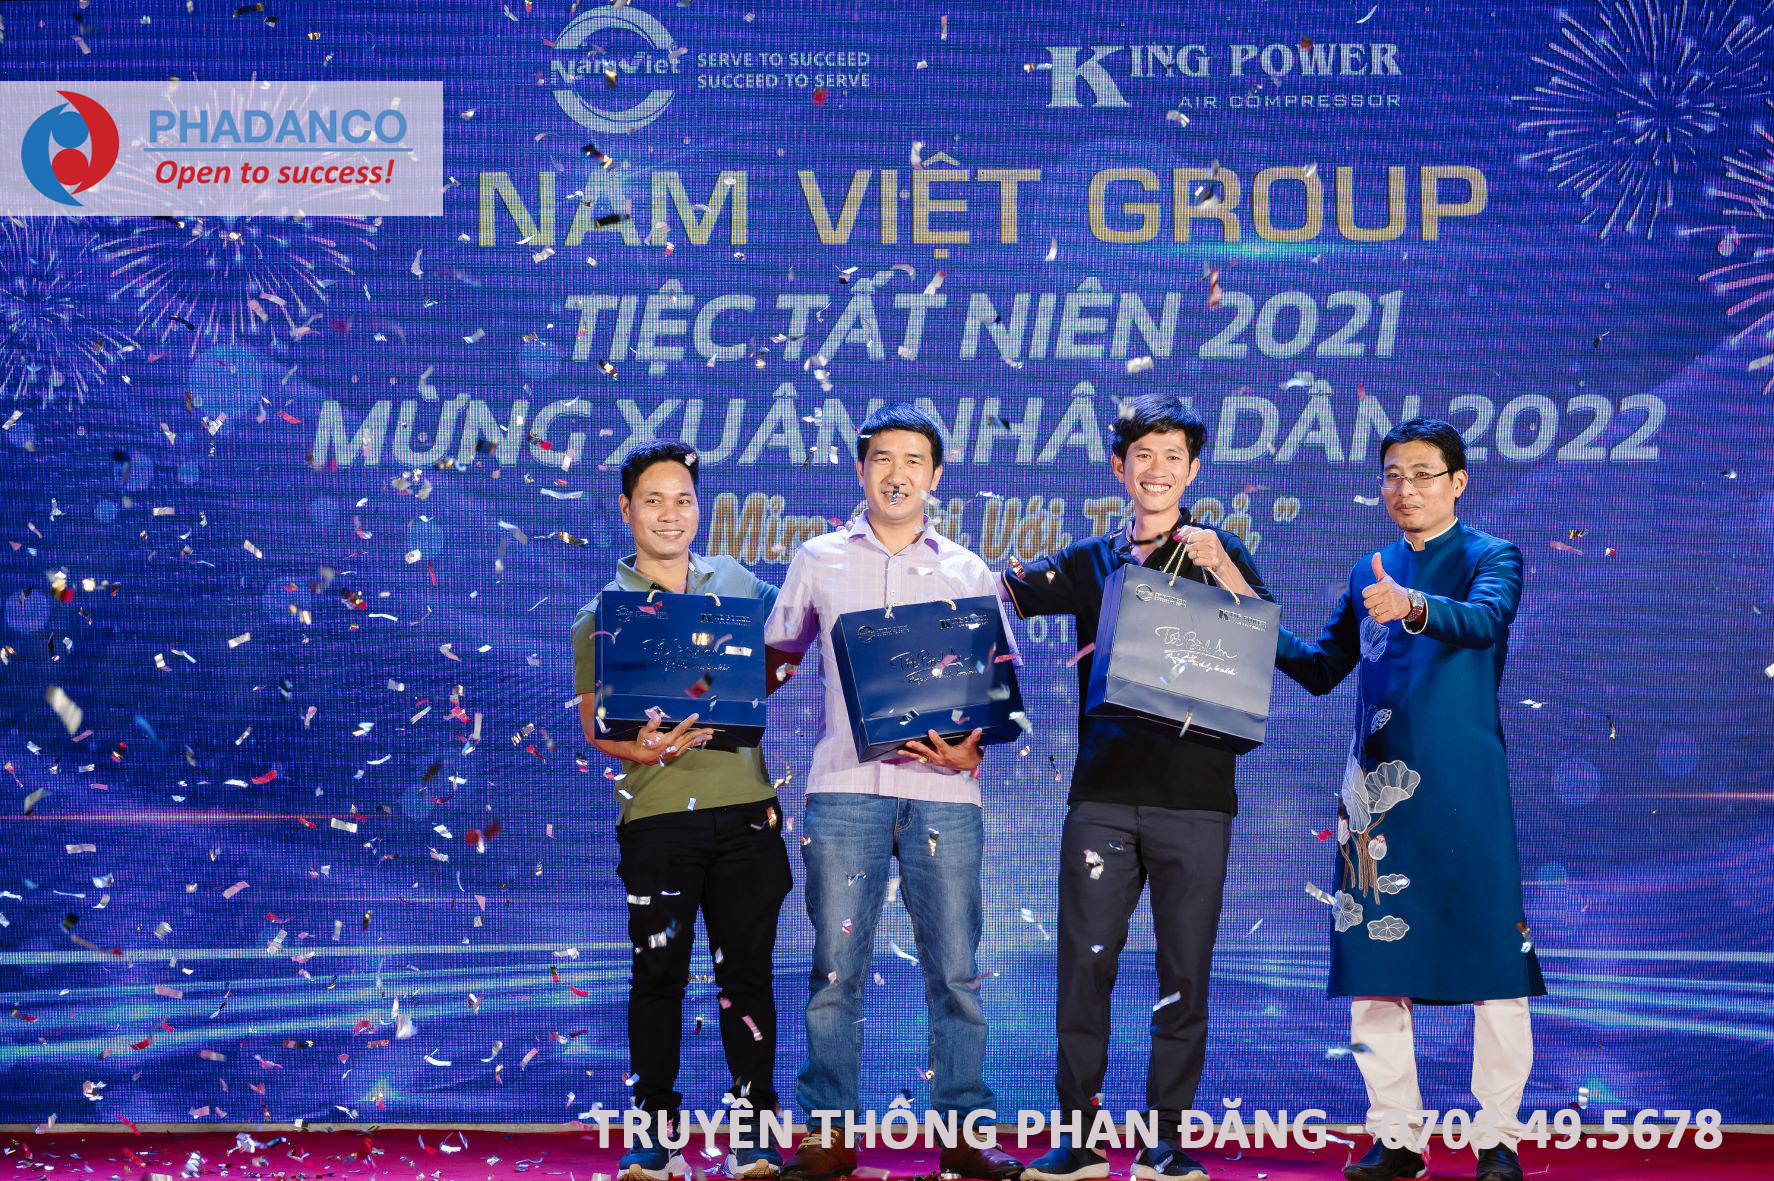 Gala tiệc tất niên công ty Nam Việt Group